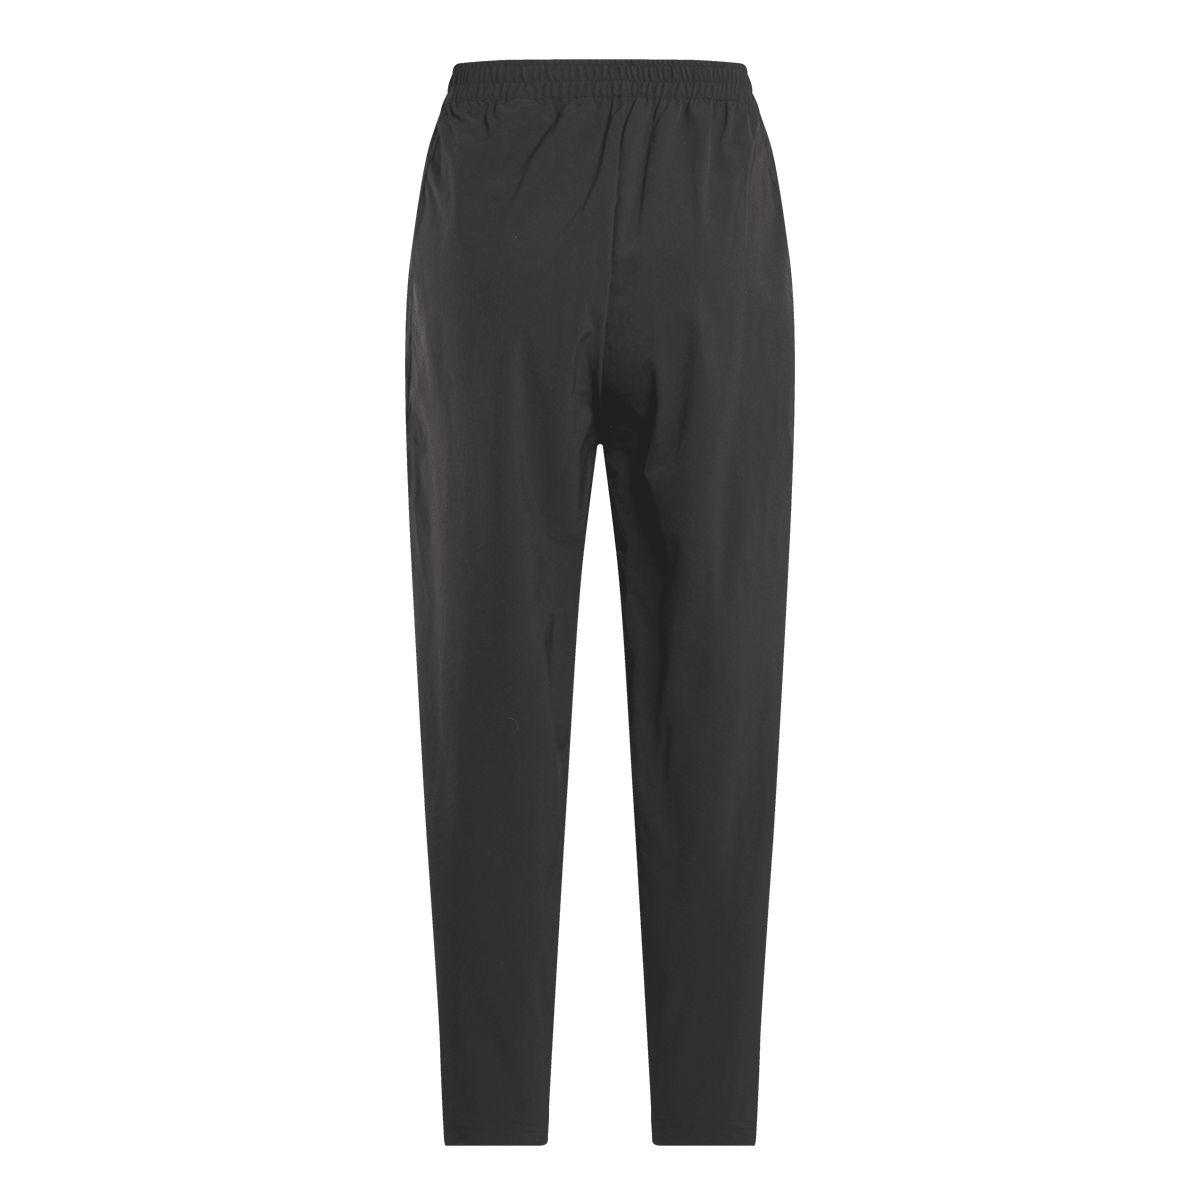 DreamBlend Pants in BLACK  Reebok Online Shop Germany